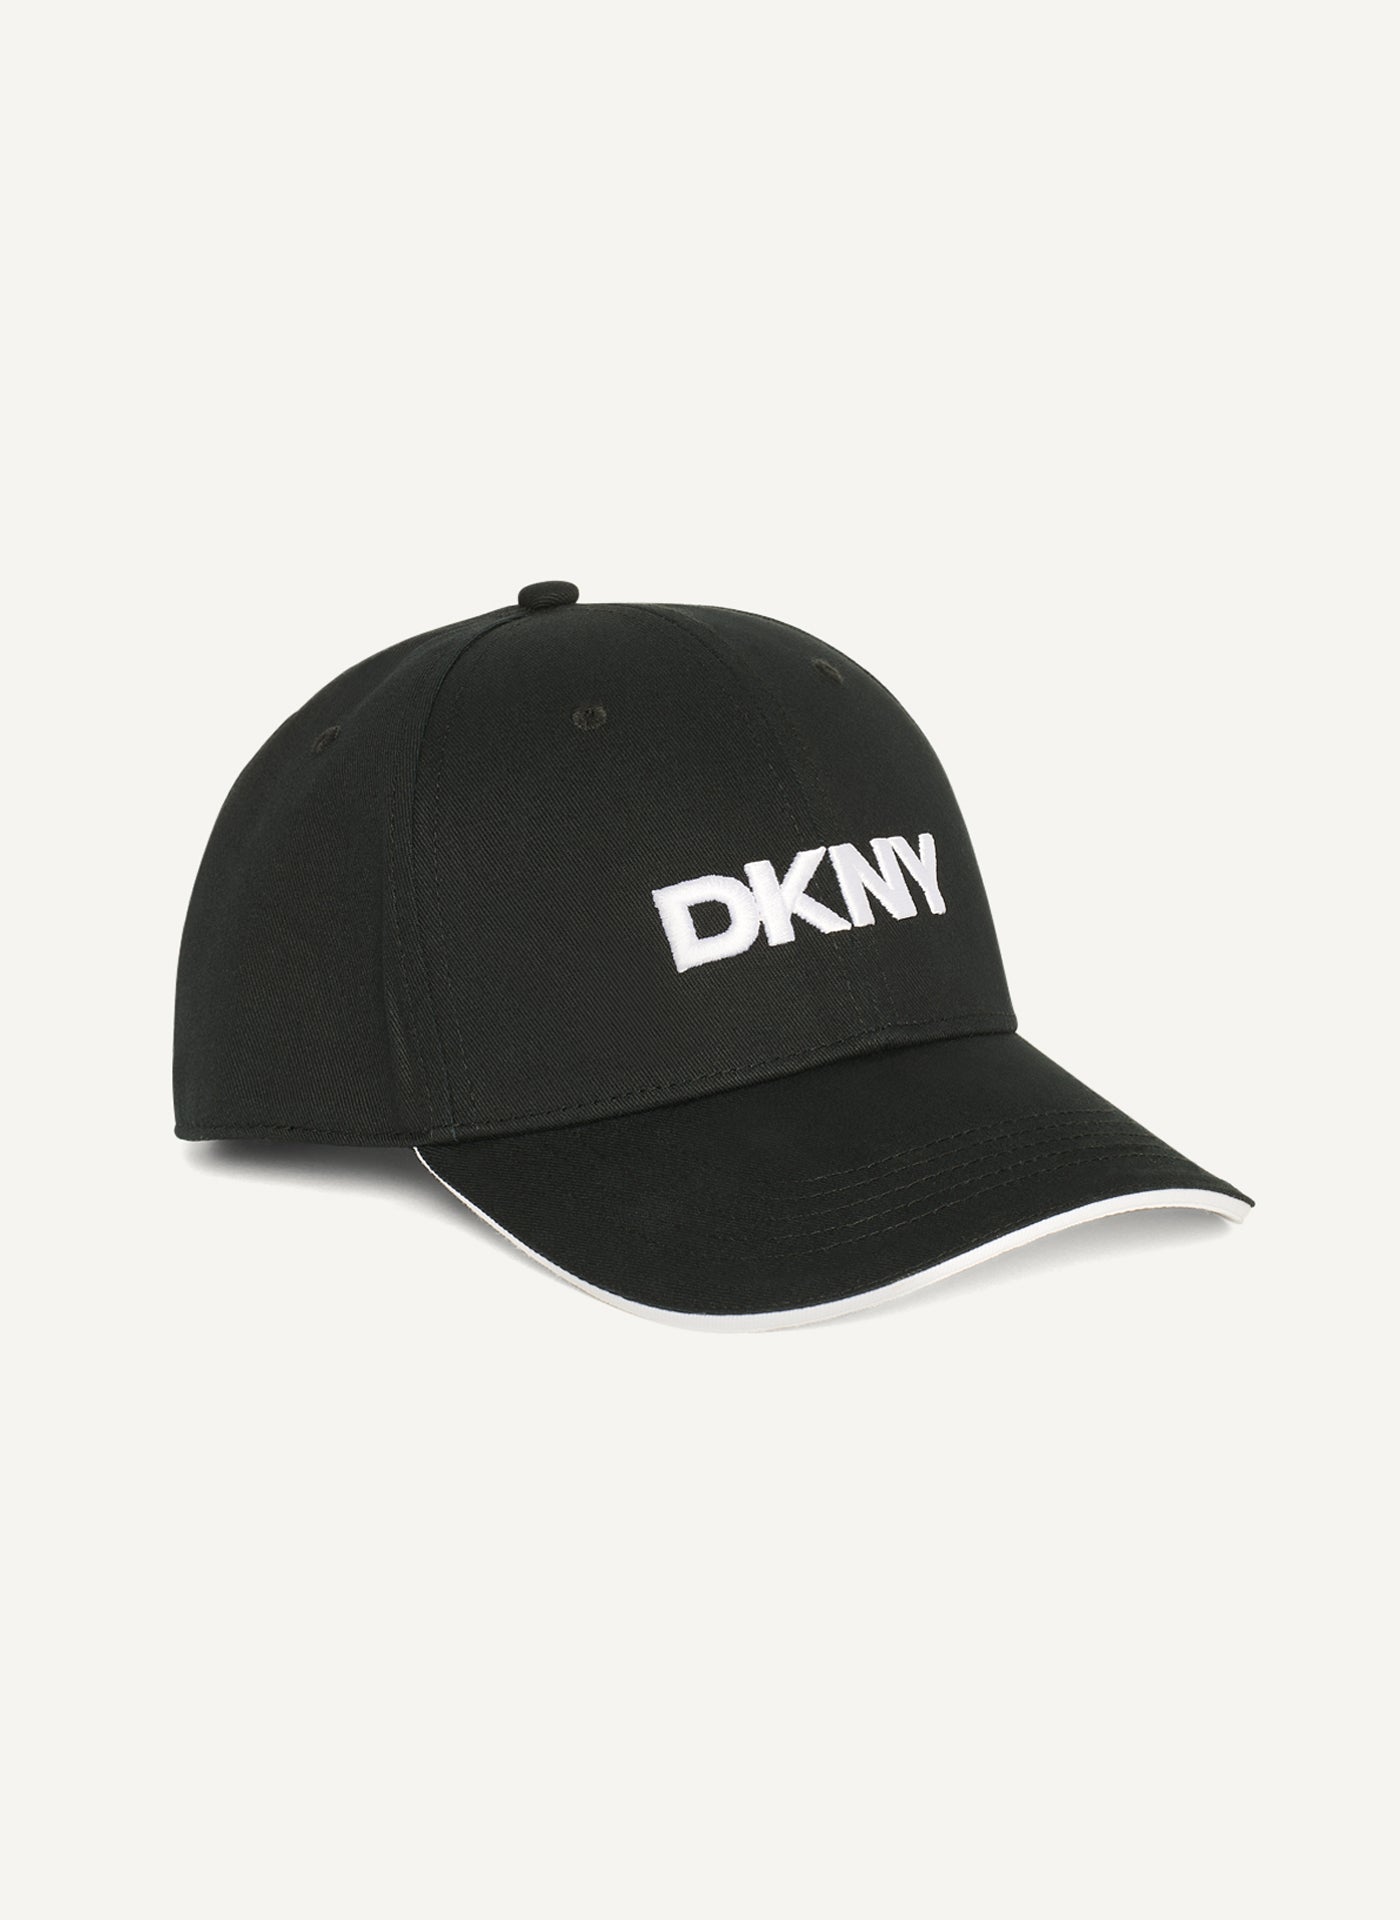 DKNY LOGO BASEBALL HAT